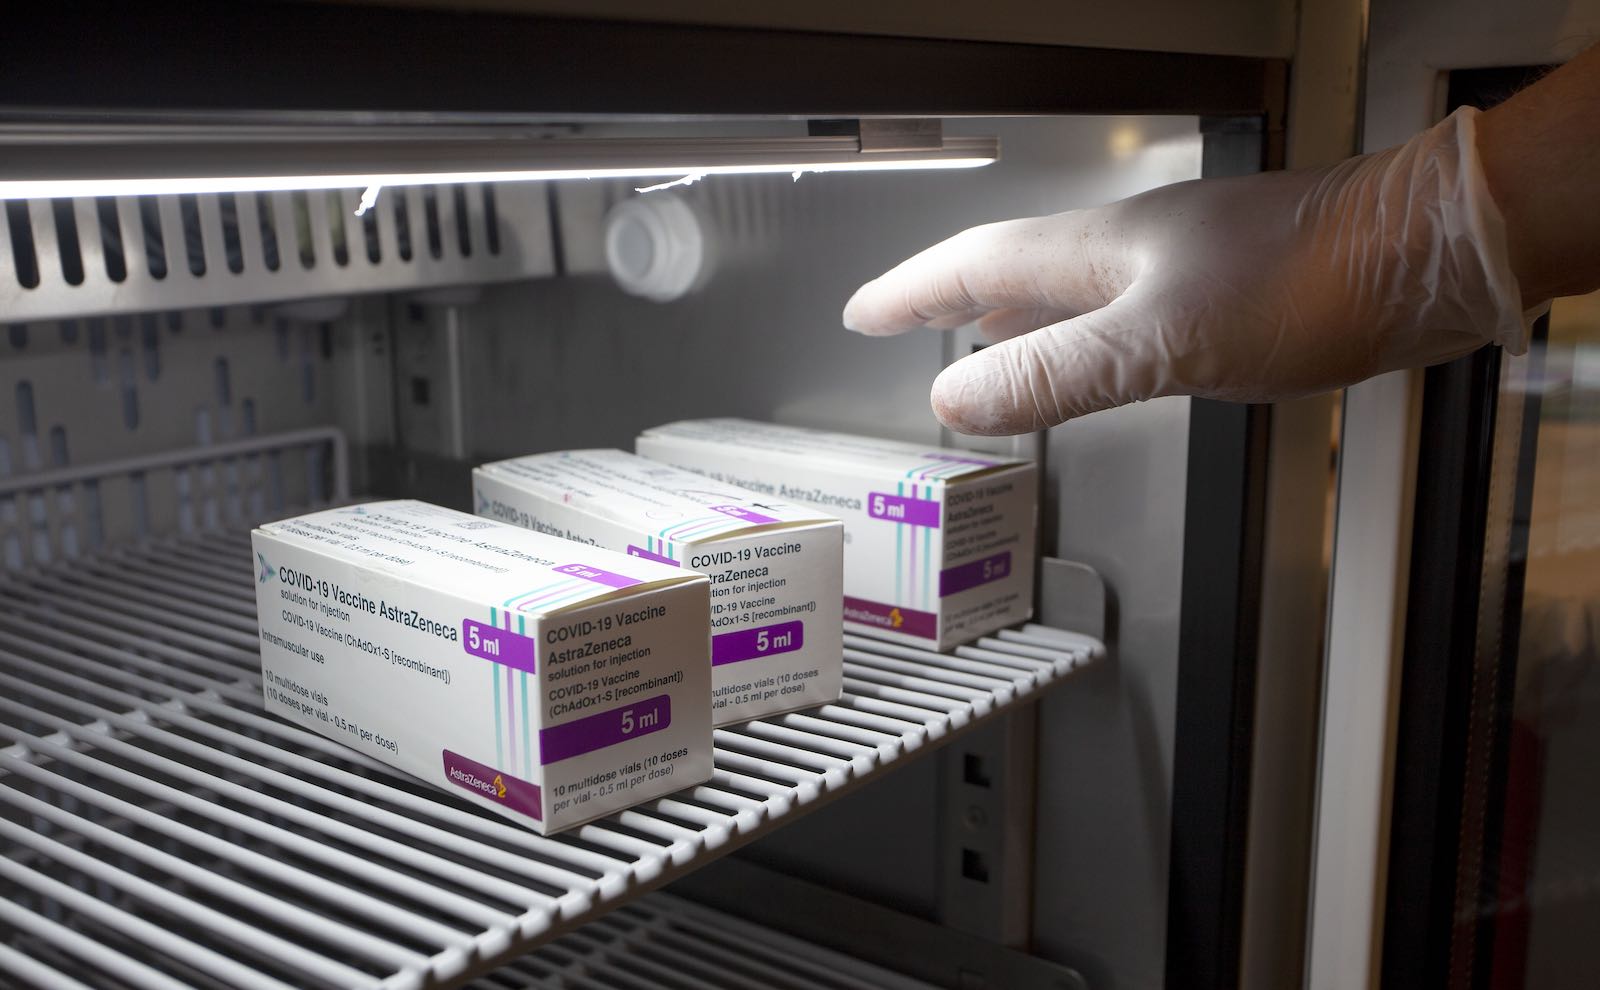 AstraZeneca vaccine boxes in a refrigerator in Bari, Italy, 9 March (Donato Fasano/Getty Images)